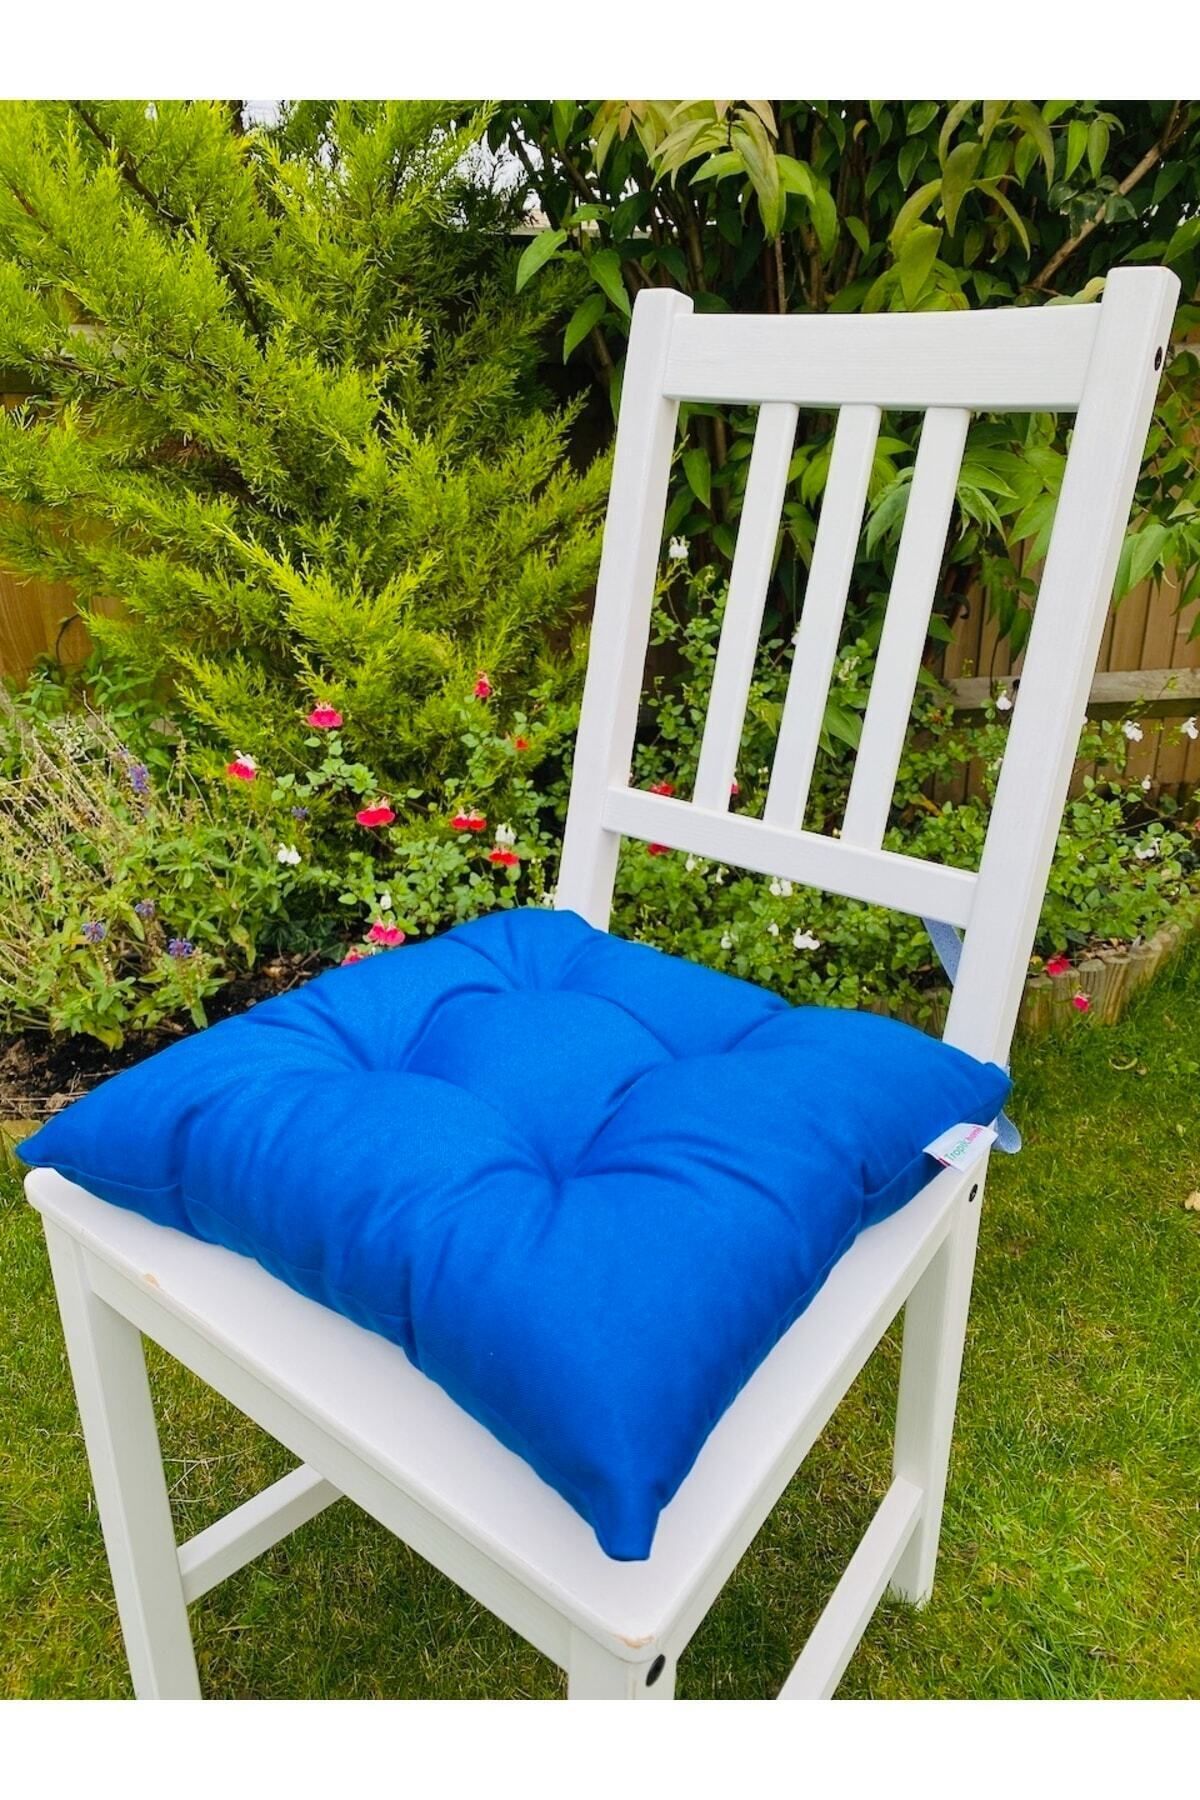 Tropikhome Mavi Renk Pamuklu Kumaş Pofidik Kare Dekoratif Sandalye Minderi 35x35 Cm, Bağcıklı Sandalye Minderi